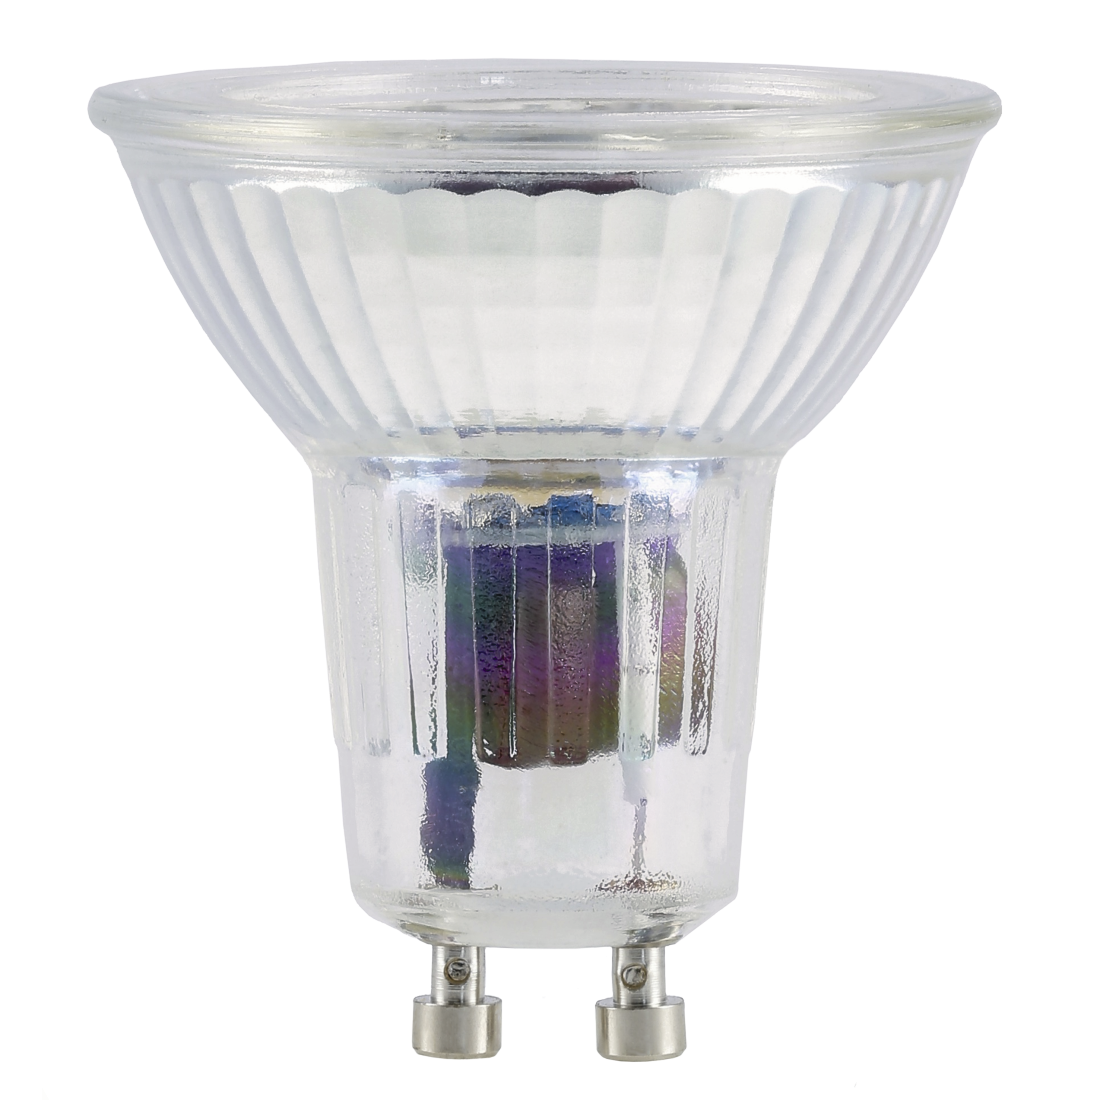 abx High-Res Image - Xavax, Ampoule LED, GU10, 350lm rempl 50W, réfl. PAR16, blc chd, verre, intensité